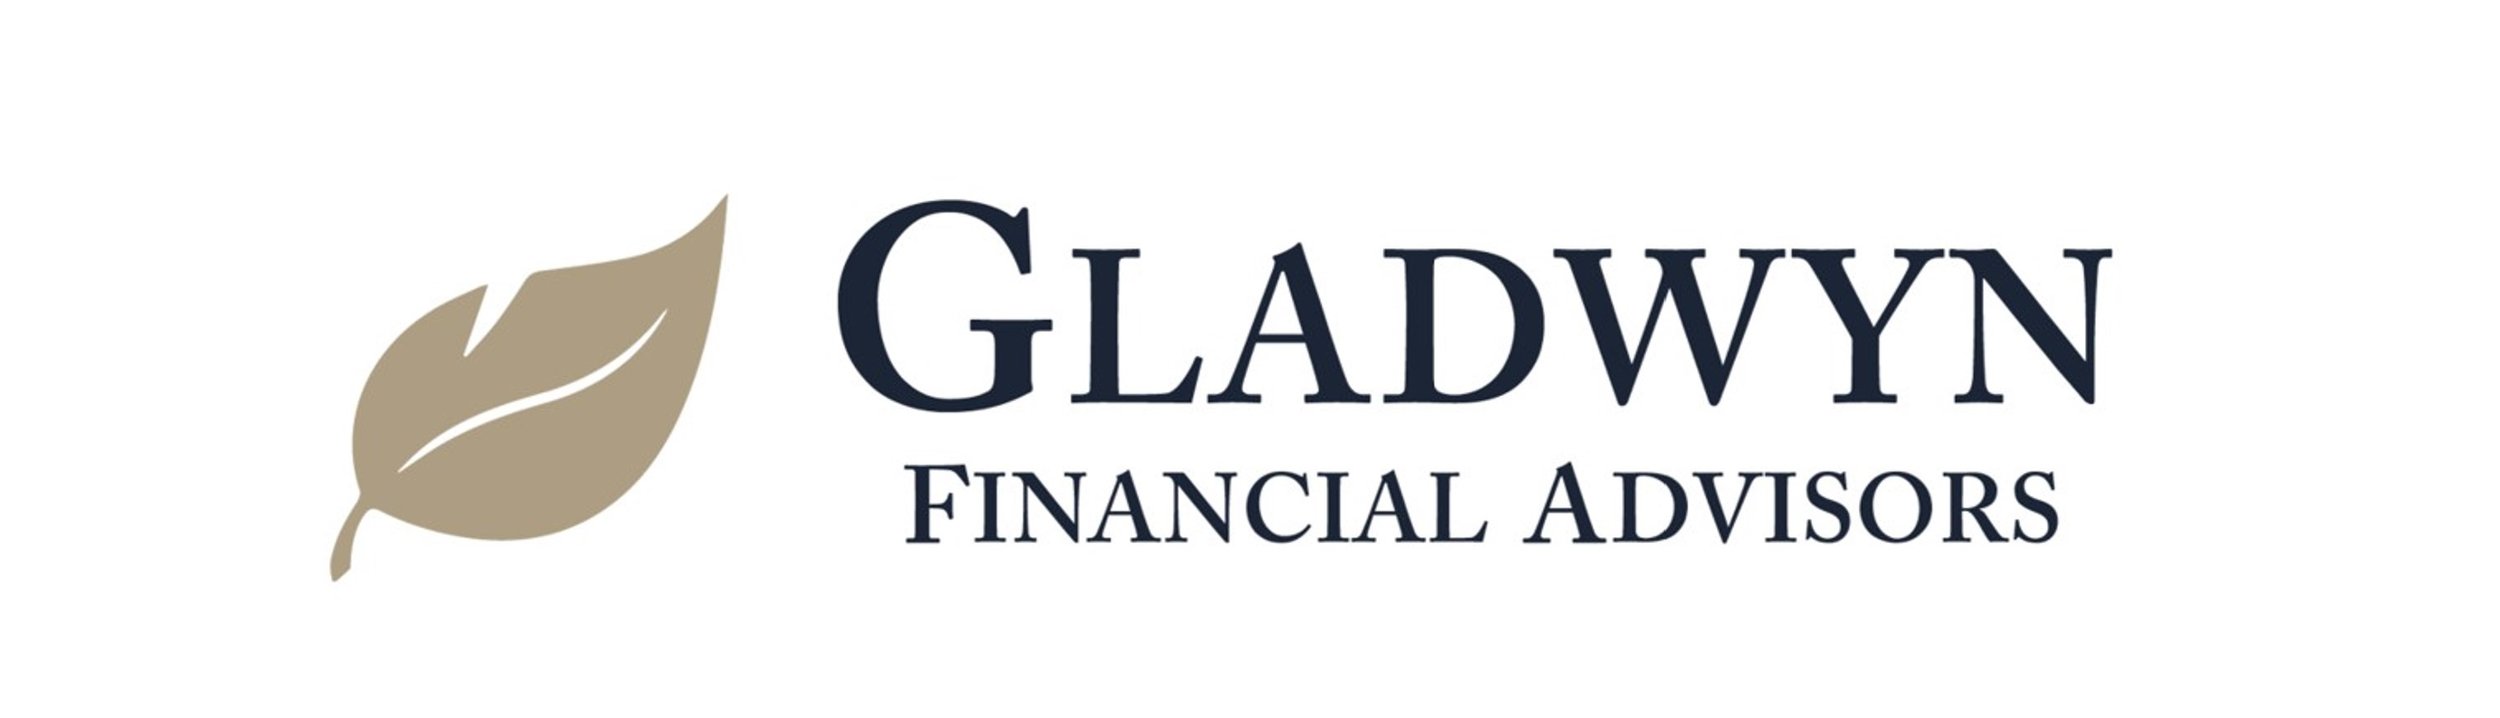 Gladwyn Financial